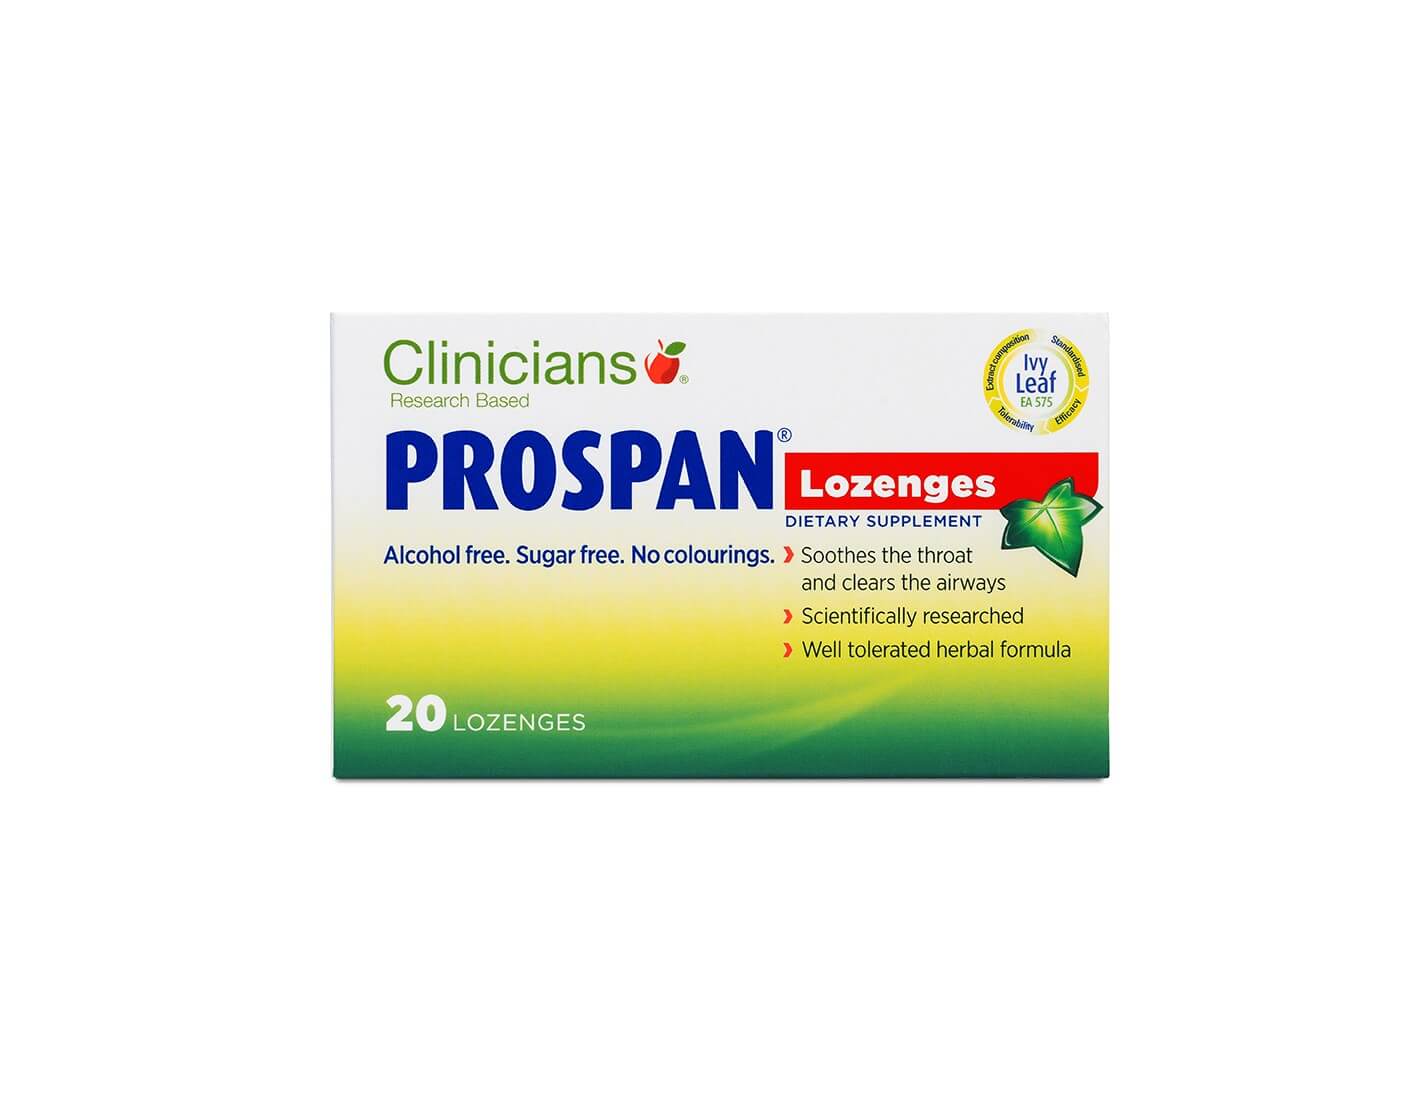 Clinicians_Prospan_Lozenges_20s_front_LR_WEB-1